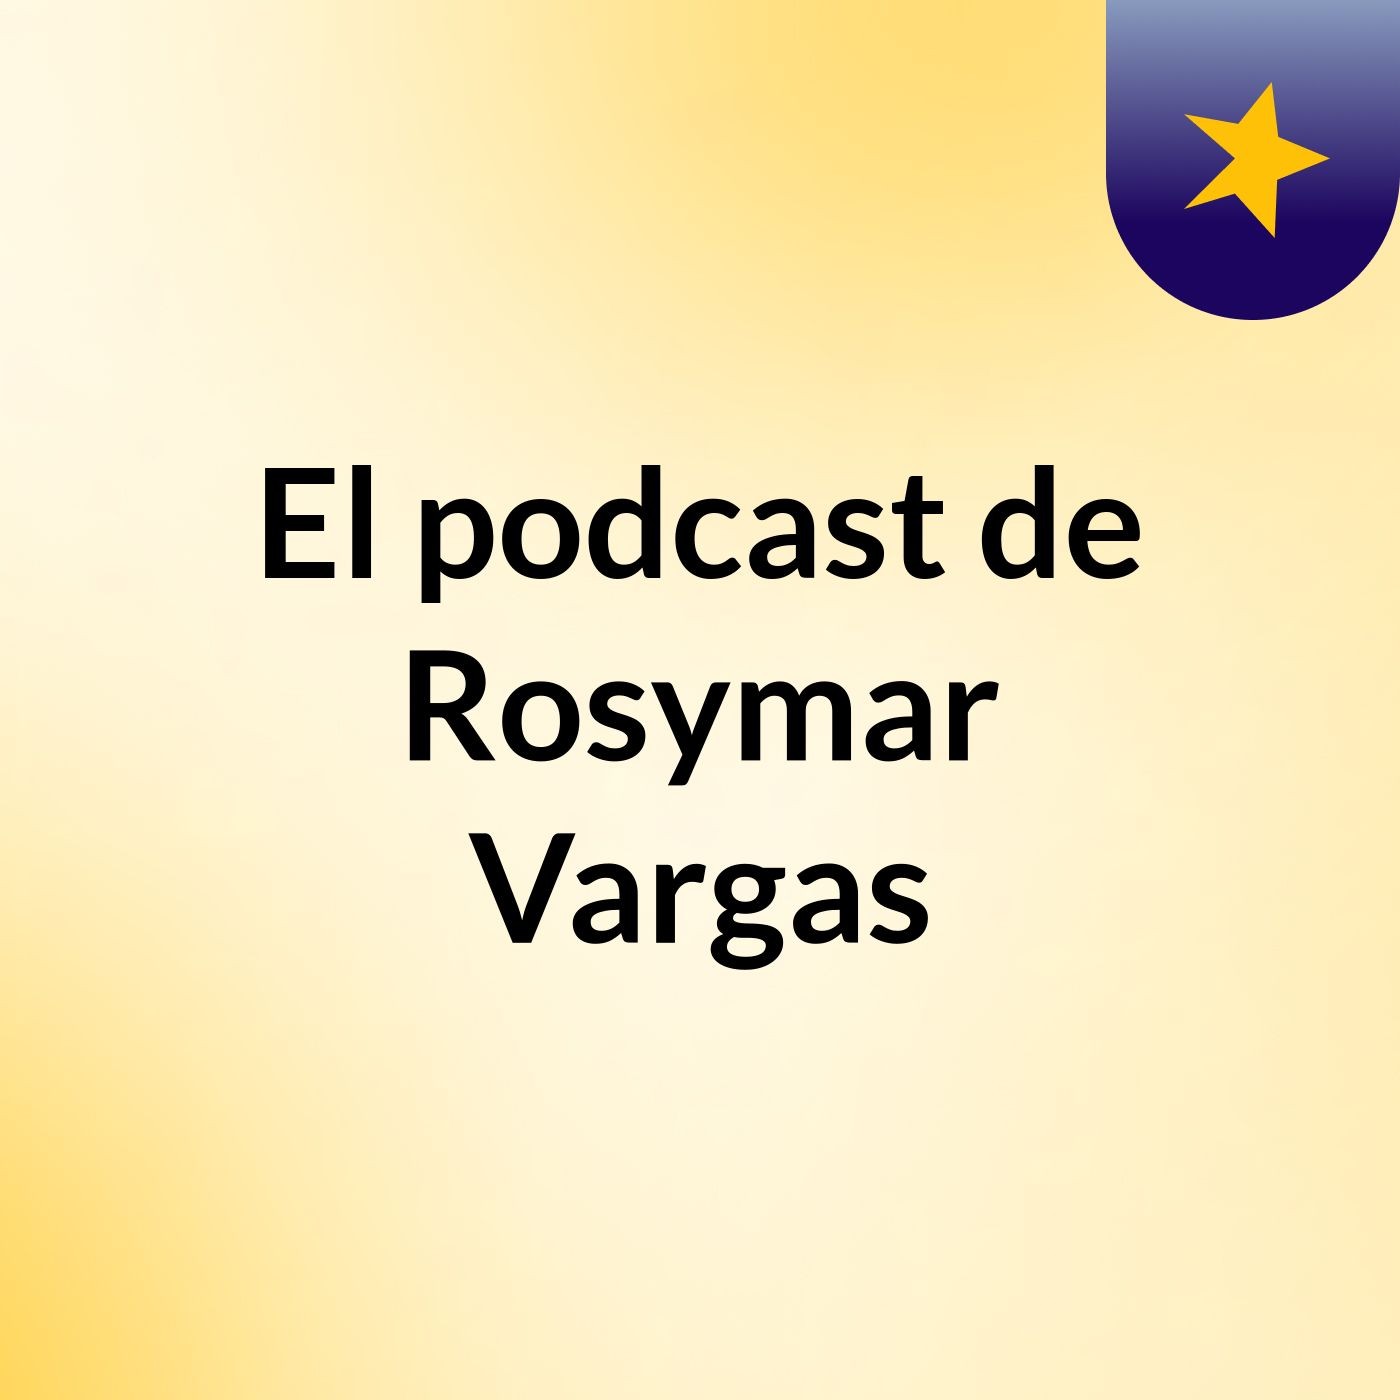 El podcast de Rosymar Vargas